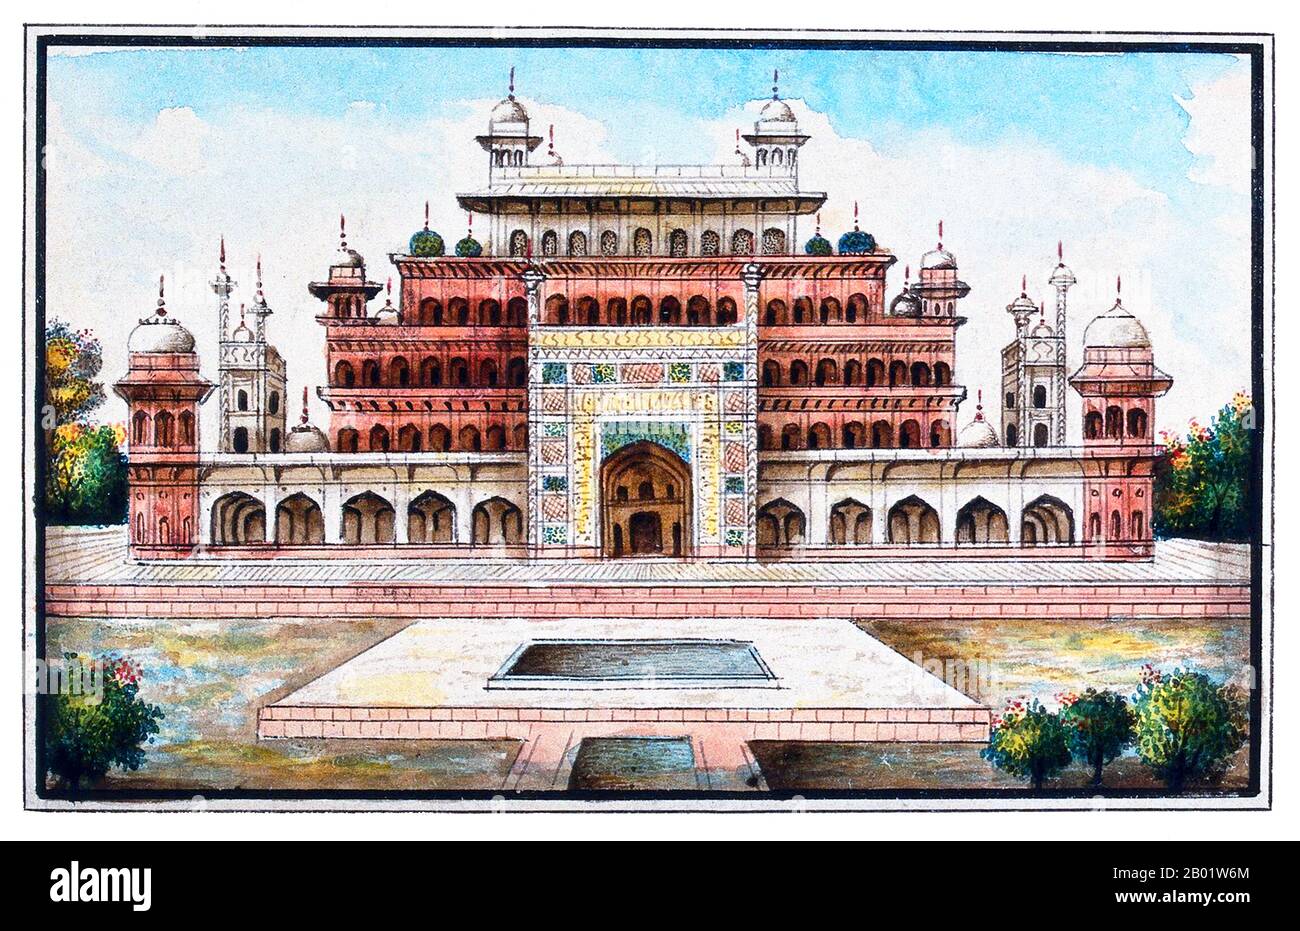 Inde : le mausolée du début du XVIIe siècle de l'empereur moghol Akbar. Aquarelle par la Compagnie des Indes orientales, XIXe siècle. Le tombeau du troisième empereur moghol Akbar (R. 1556-1605) est un chef-d'œuvre architectural moghol important, construit en 1605-1613 et situé sur 119 acres de terrain à Sikandra, une banlieue d'Agra, Uttar Pradesh, Inde. L'empereur Akbar lui-même a commencé sa construction vers 1600, selon la tradition d'Asie centrale pour commencer la construction de sa tombe pendant sa vie. Akbar lui-même a planifié sa propre tombe et a choisi un site approprié. Il a été complété par son fils. Banque D'Images